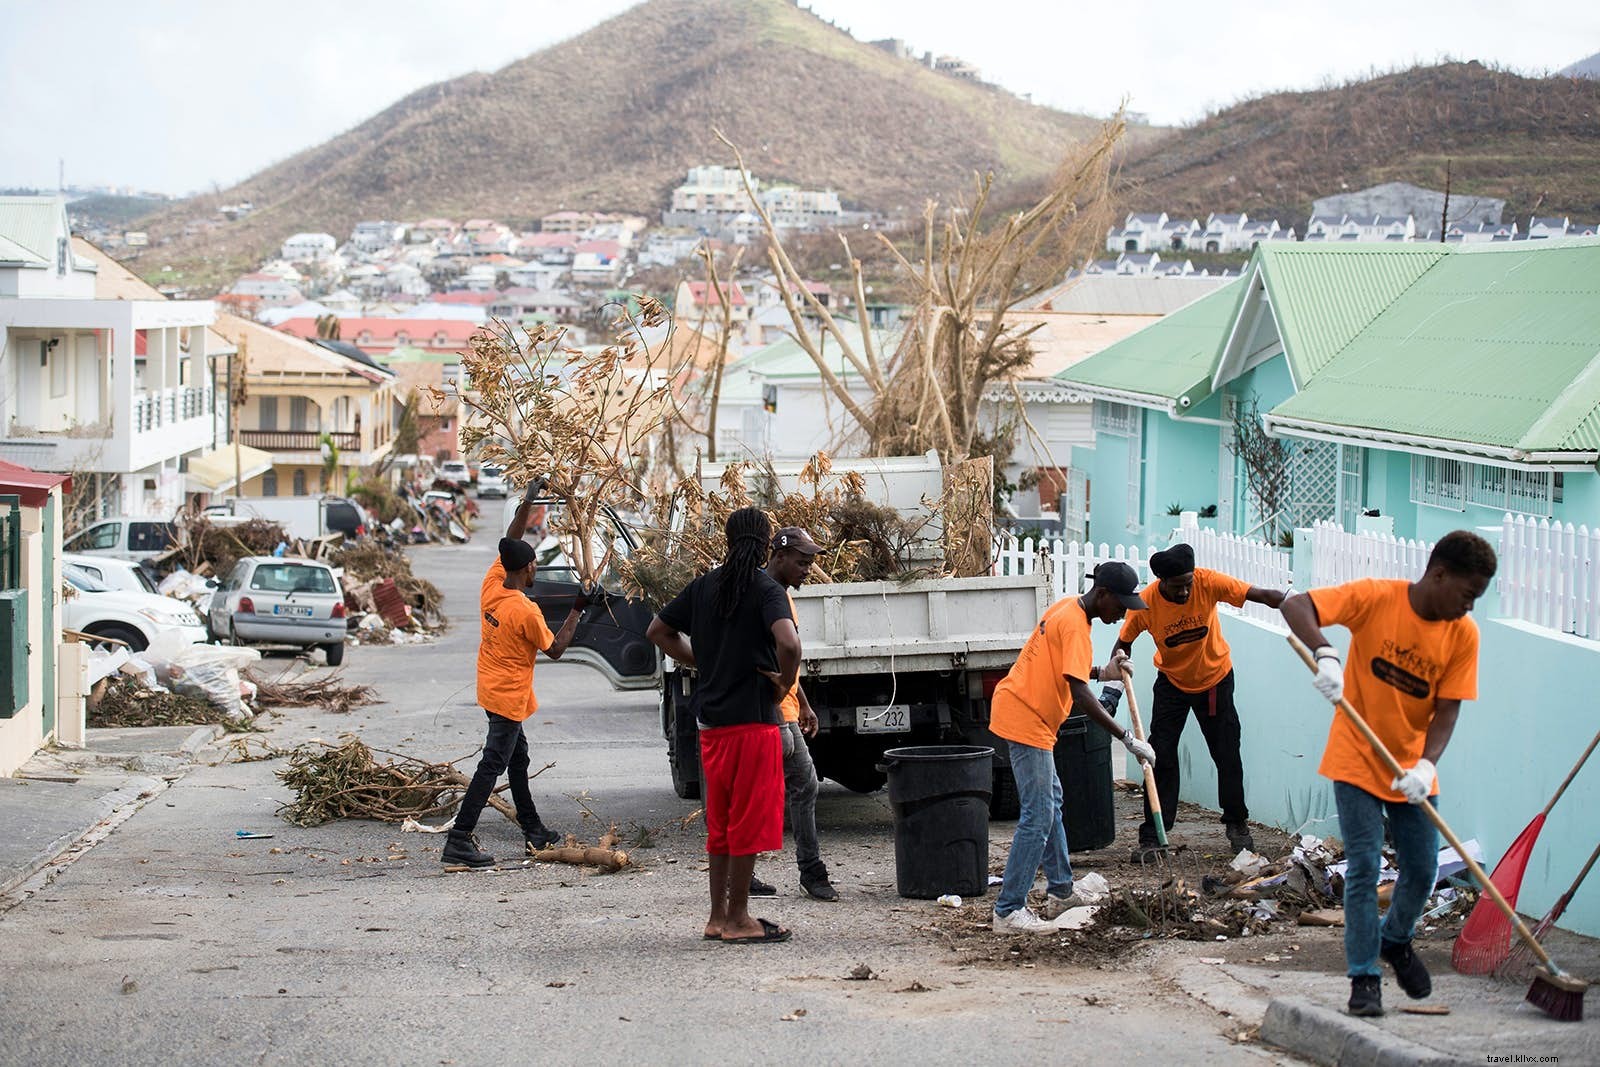 Socorro do furacão caribenho após Irma e Maria:como ajudar 